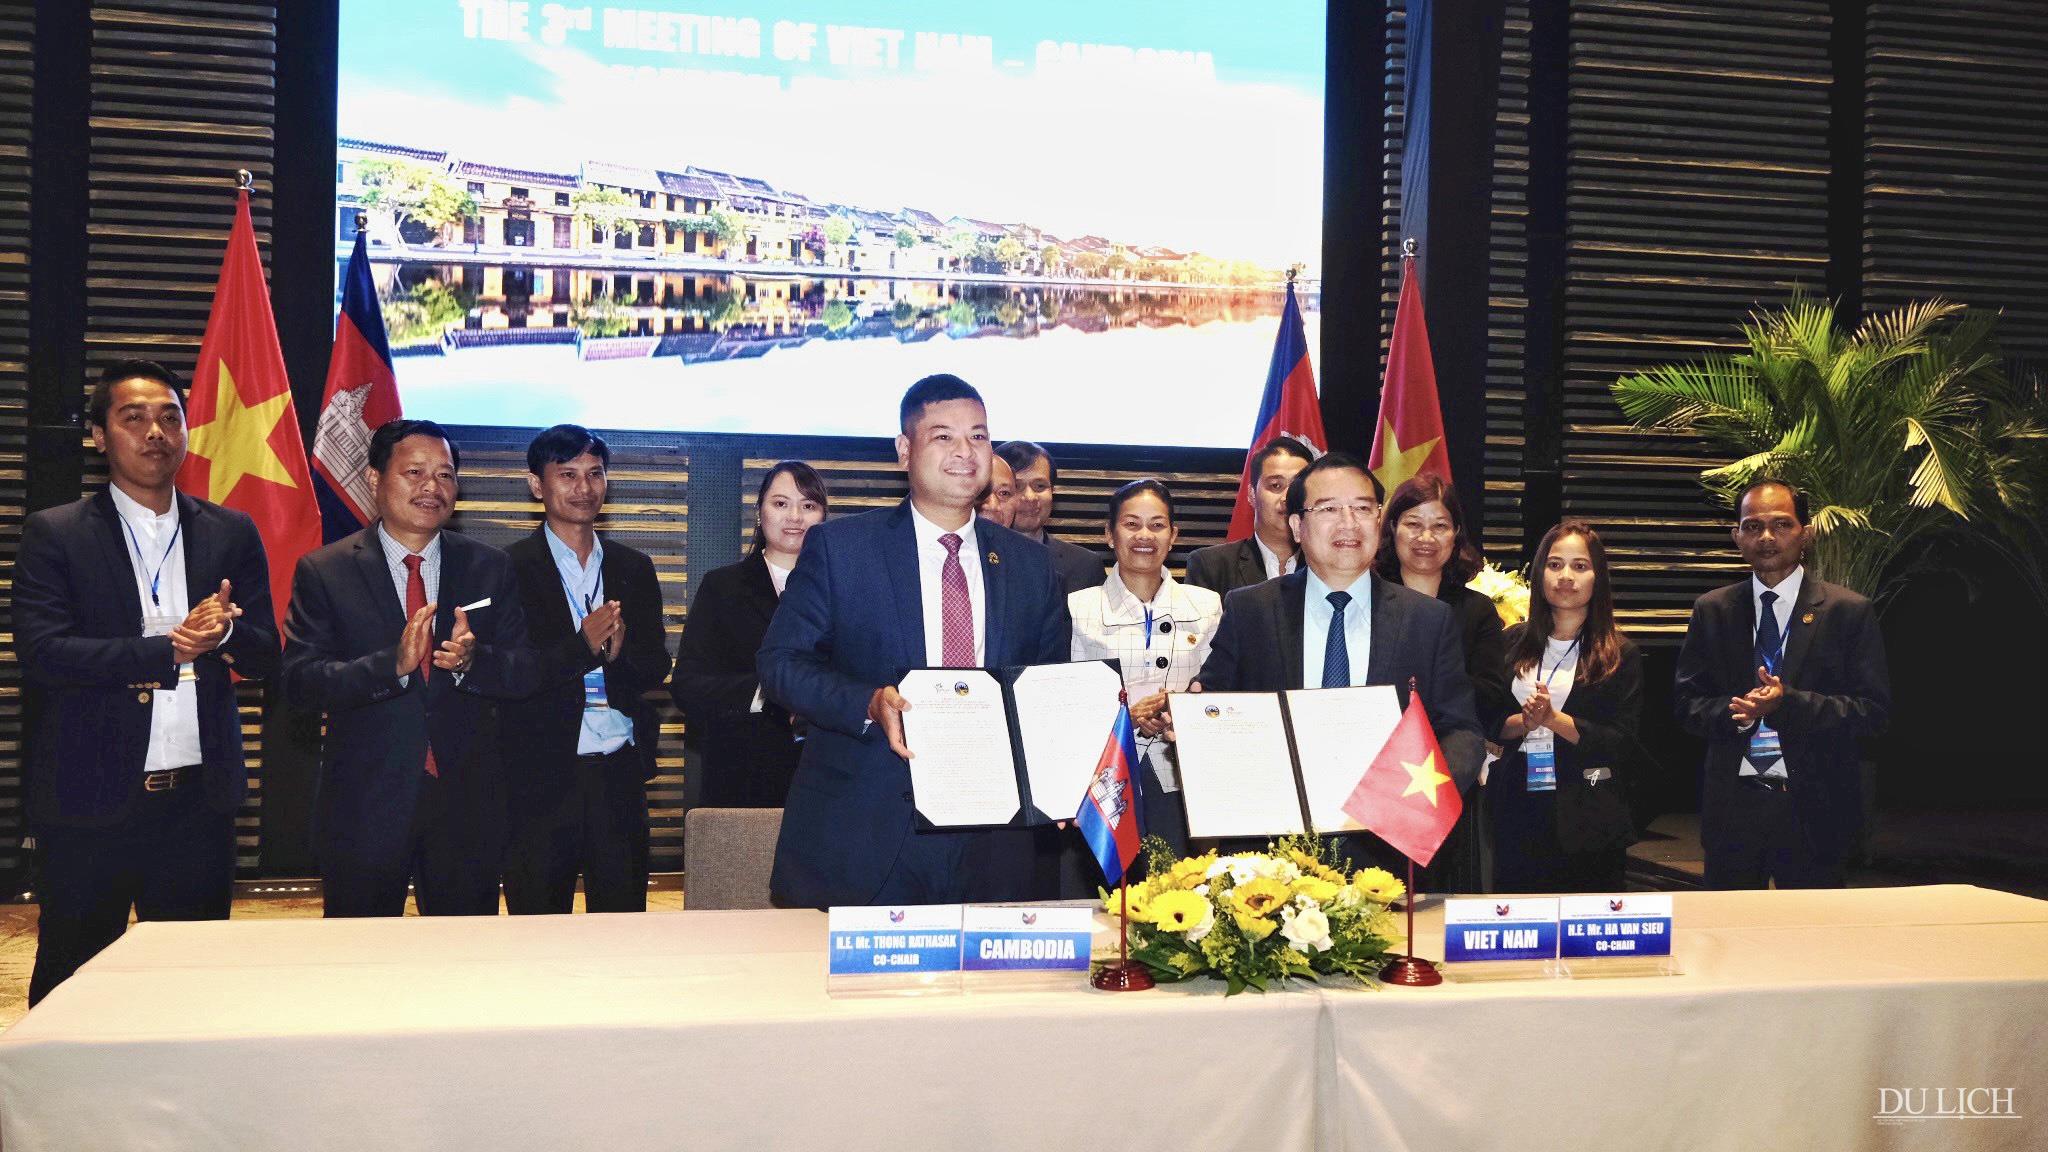 Lễ ký kết biên bản hợp tác du lịch giữa Việt Nam và Campuchia